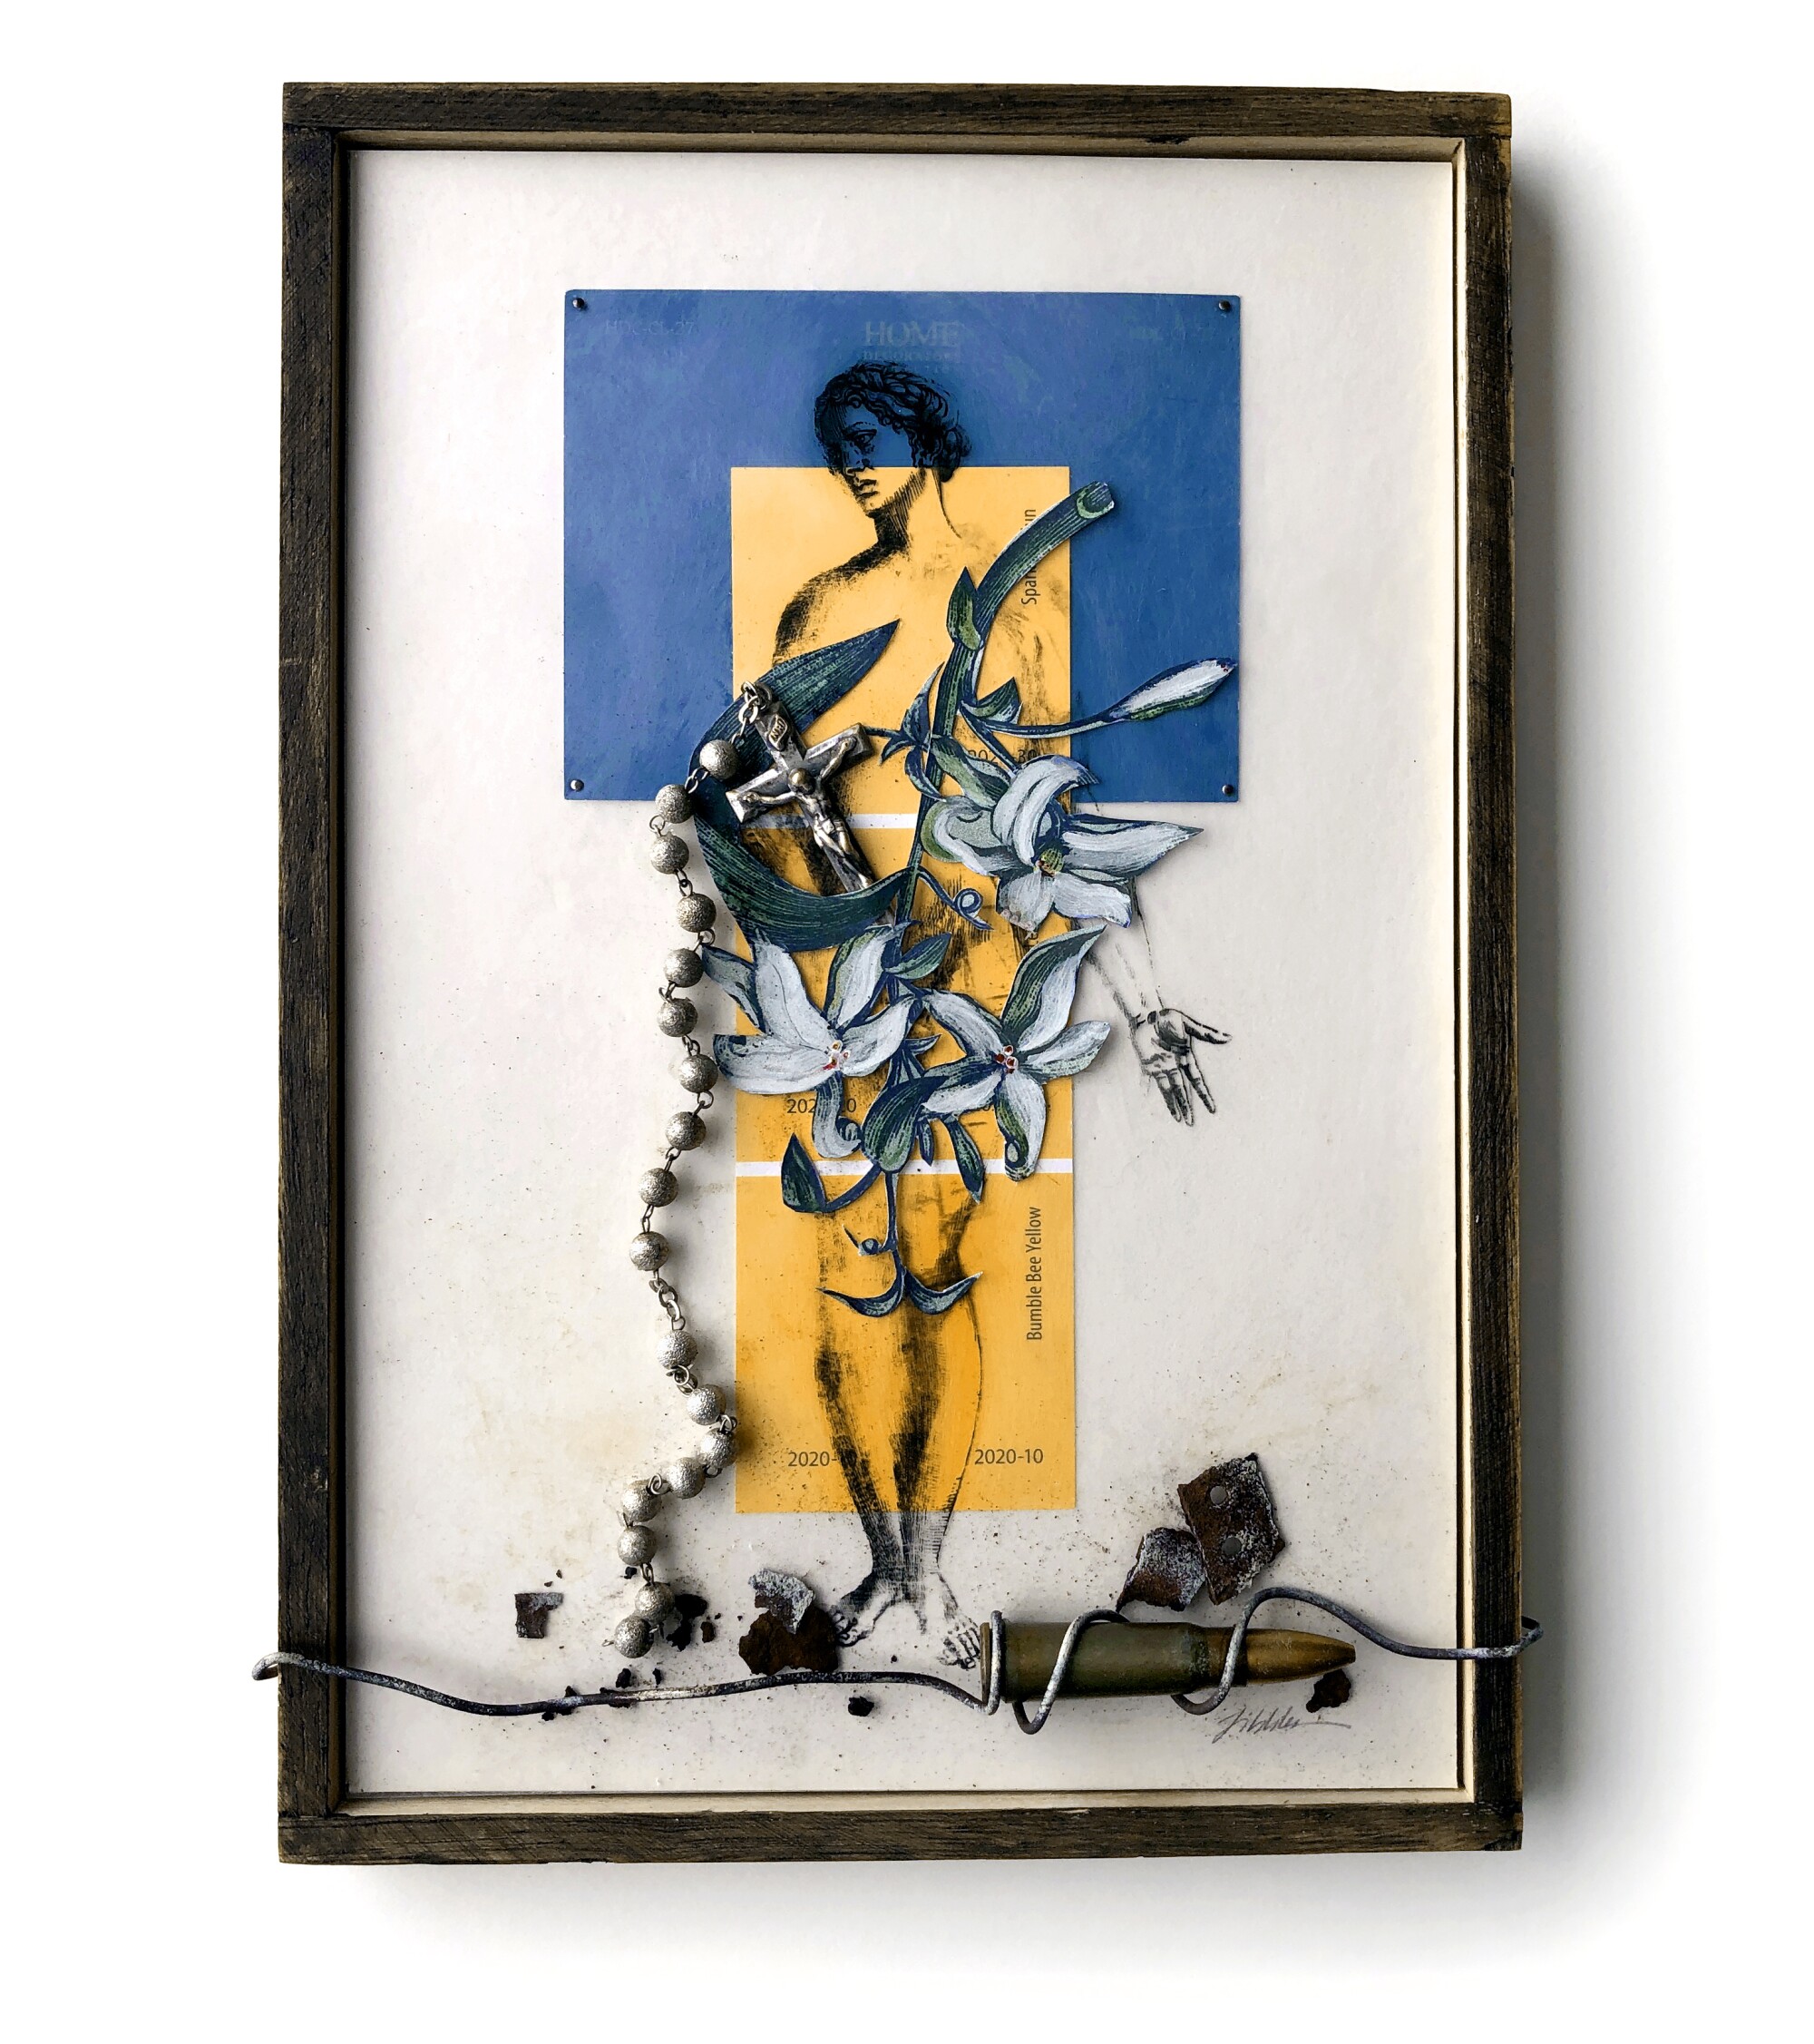 नीले और पीले कागजों पर एक महिला के ऊपर रखे फूलों और क्रूस के साथ फोटो कोलाज और उसके पैरों में एक तार पर एक गोली